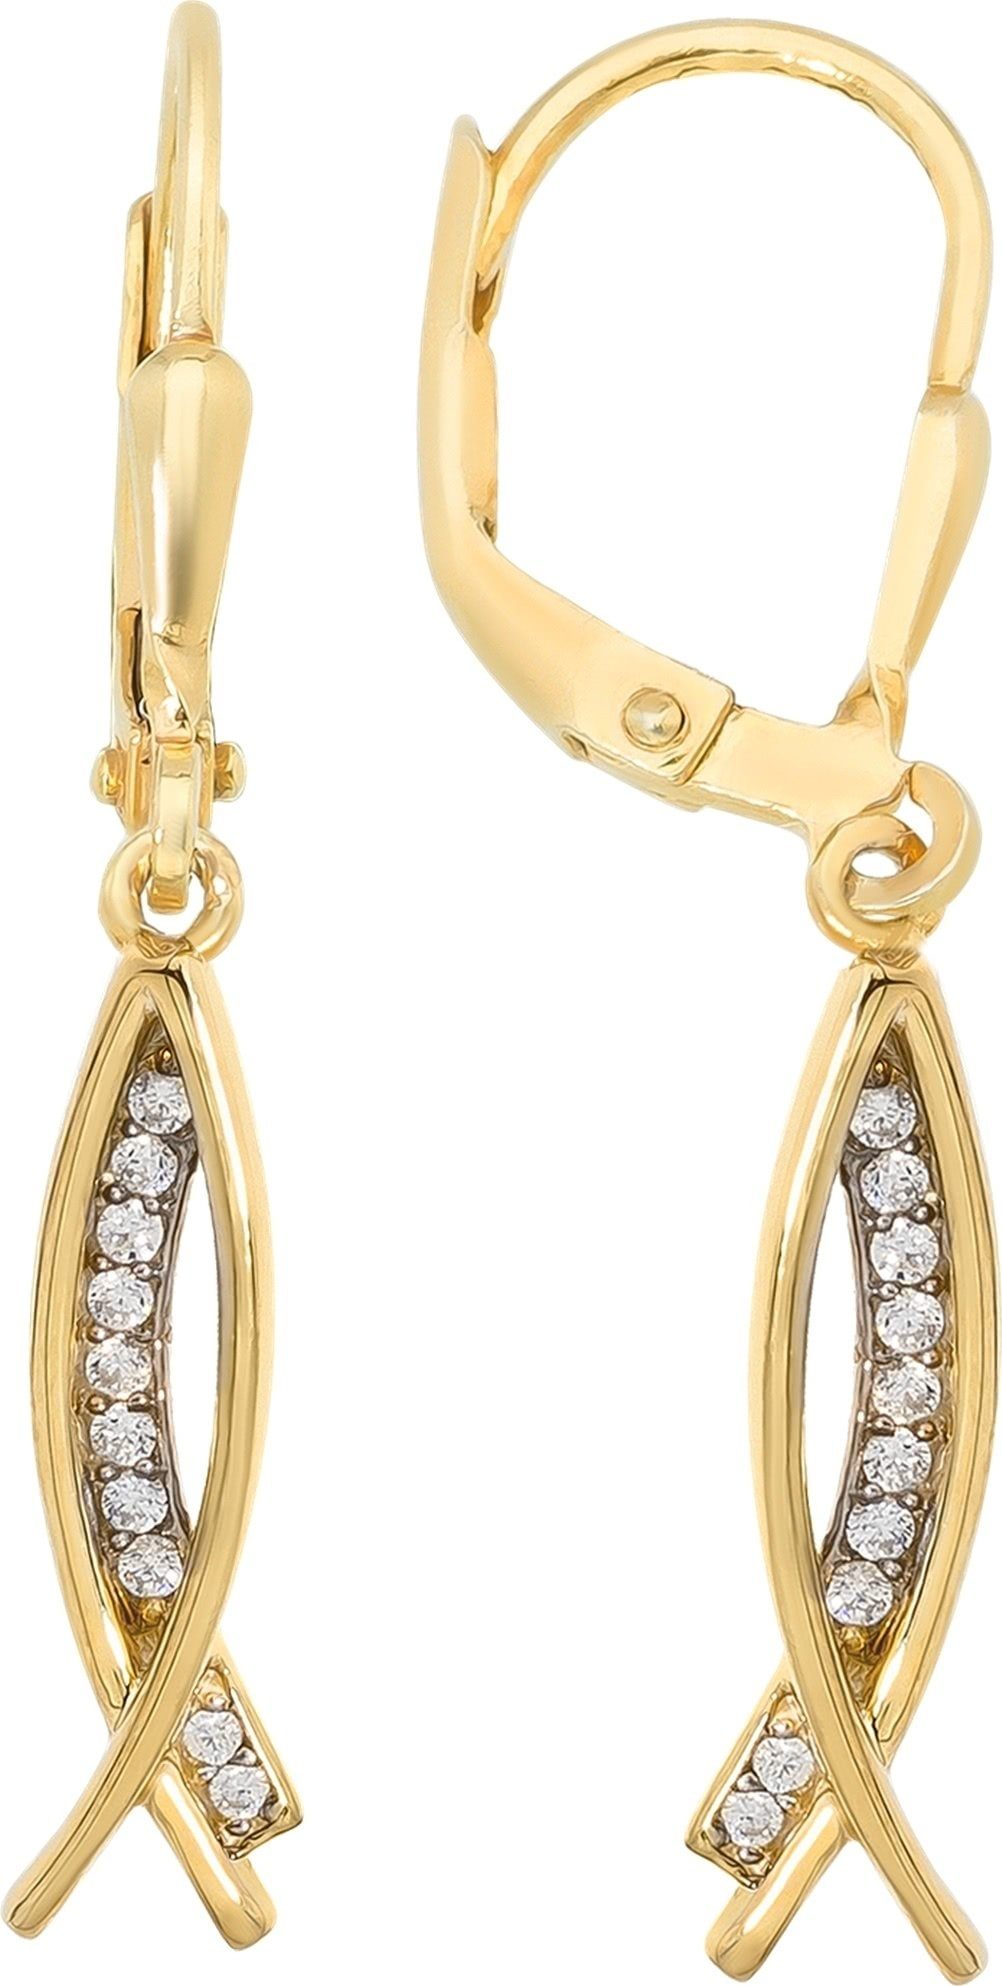 Balia Paar Ohrhänger Balia Gold Creolen für Damen Fashion (Ohrhänger), Damen Ohrhänger Fashion aus 333 Gelbgold - 8 Karat, Länge ca. 3,2cm